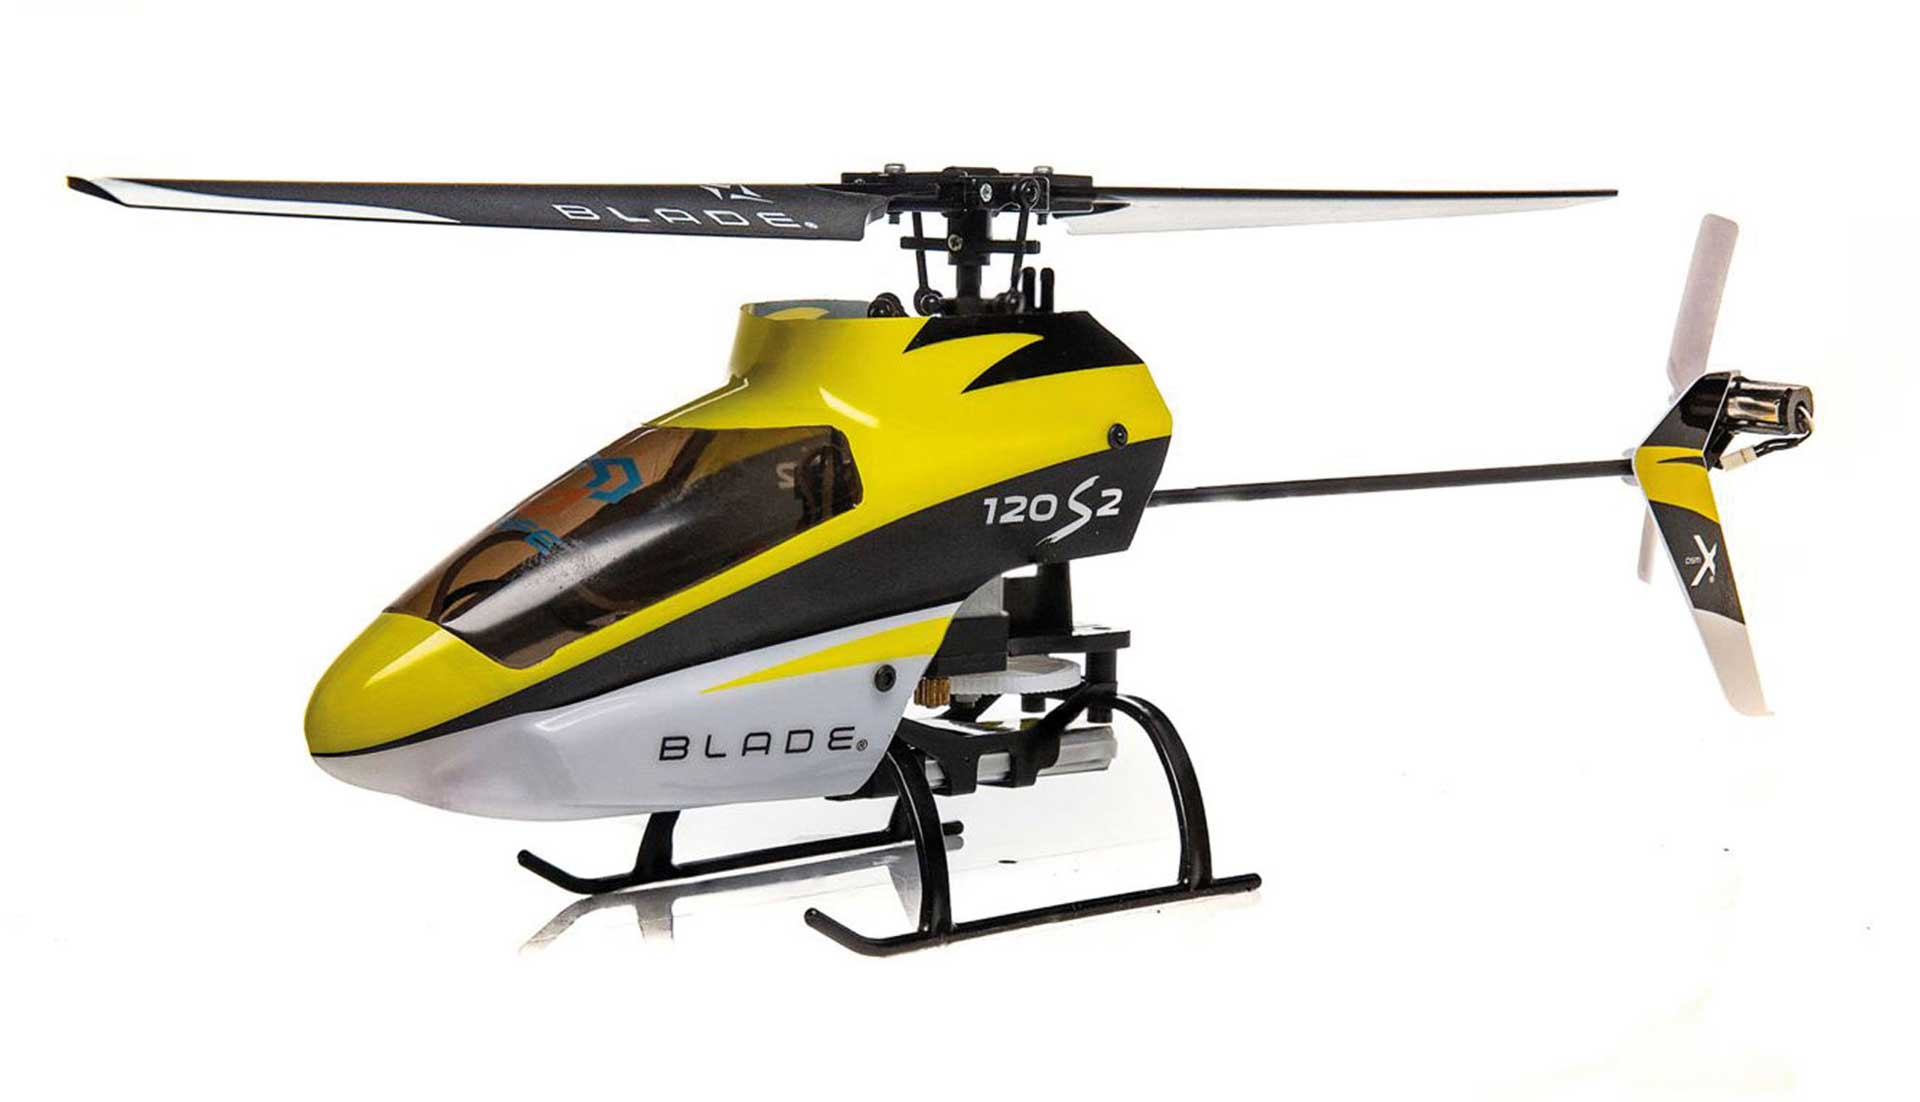 BLADE 120 S2 RTF INKL. SAFE Hubschrauber / Helikopter